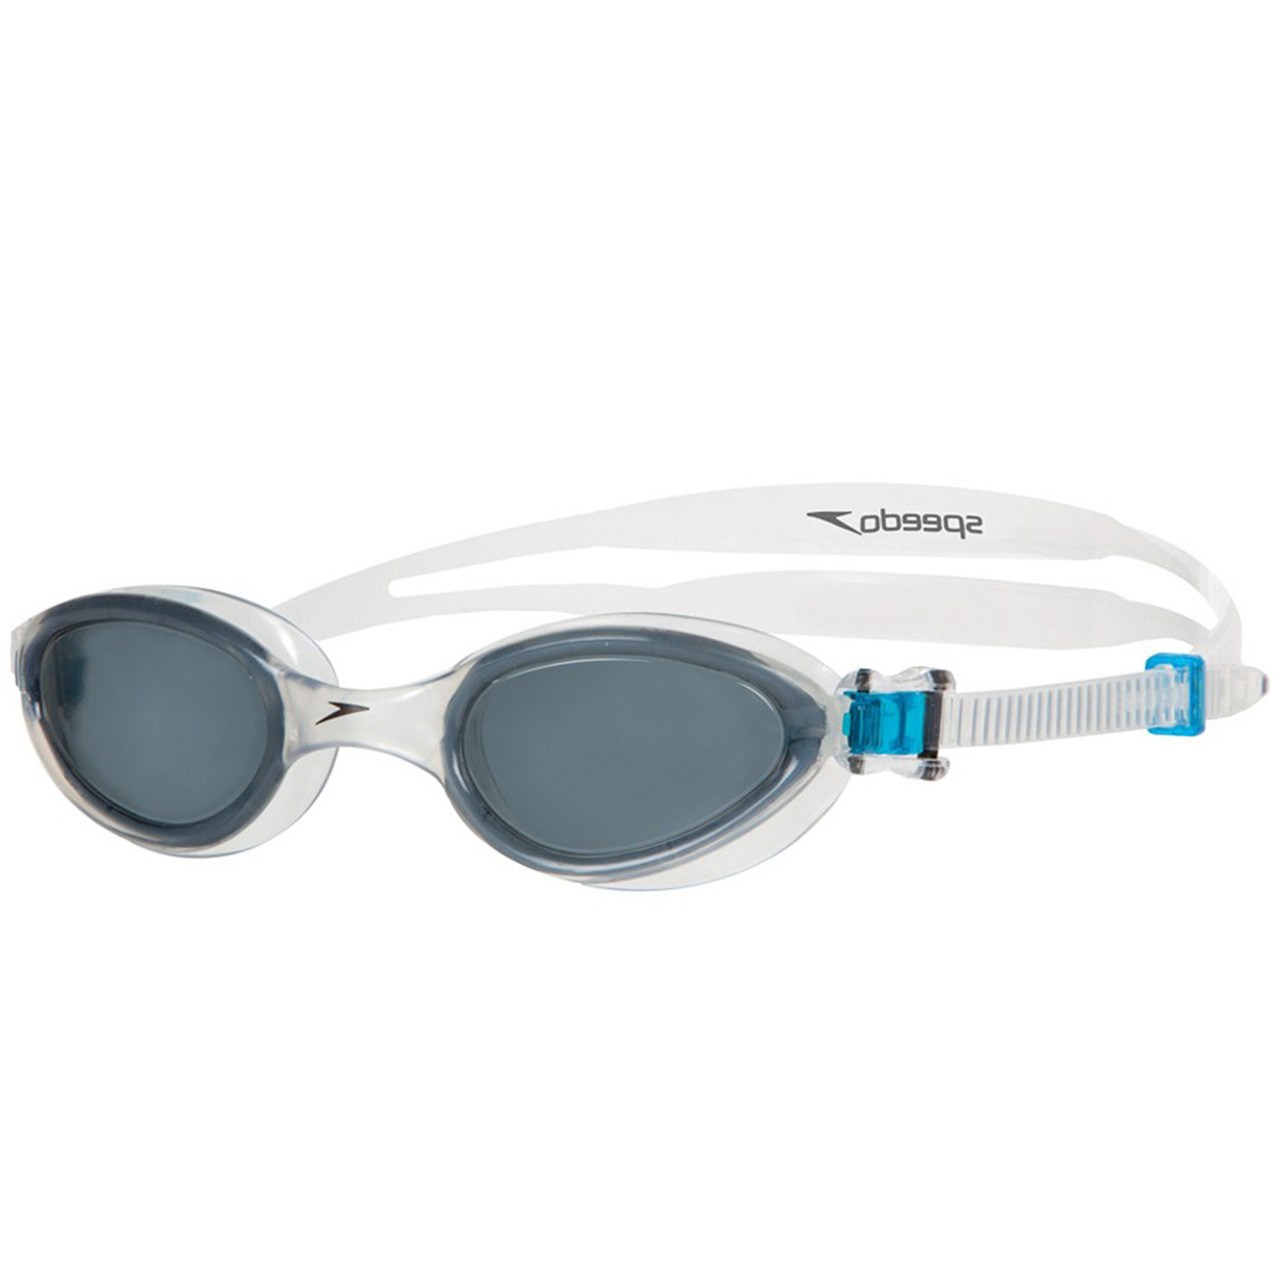 عینک شنای اسپیدو مدل Futura One